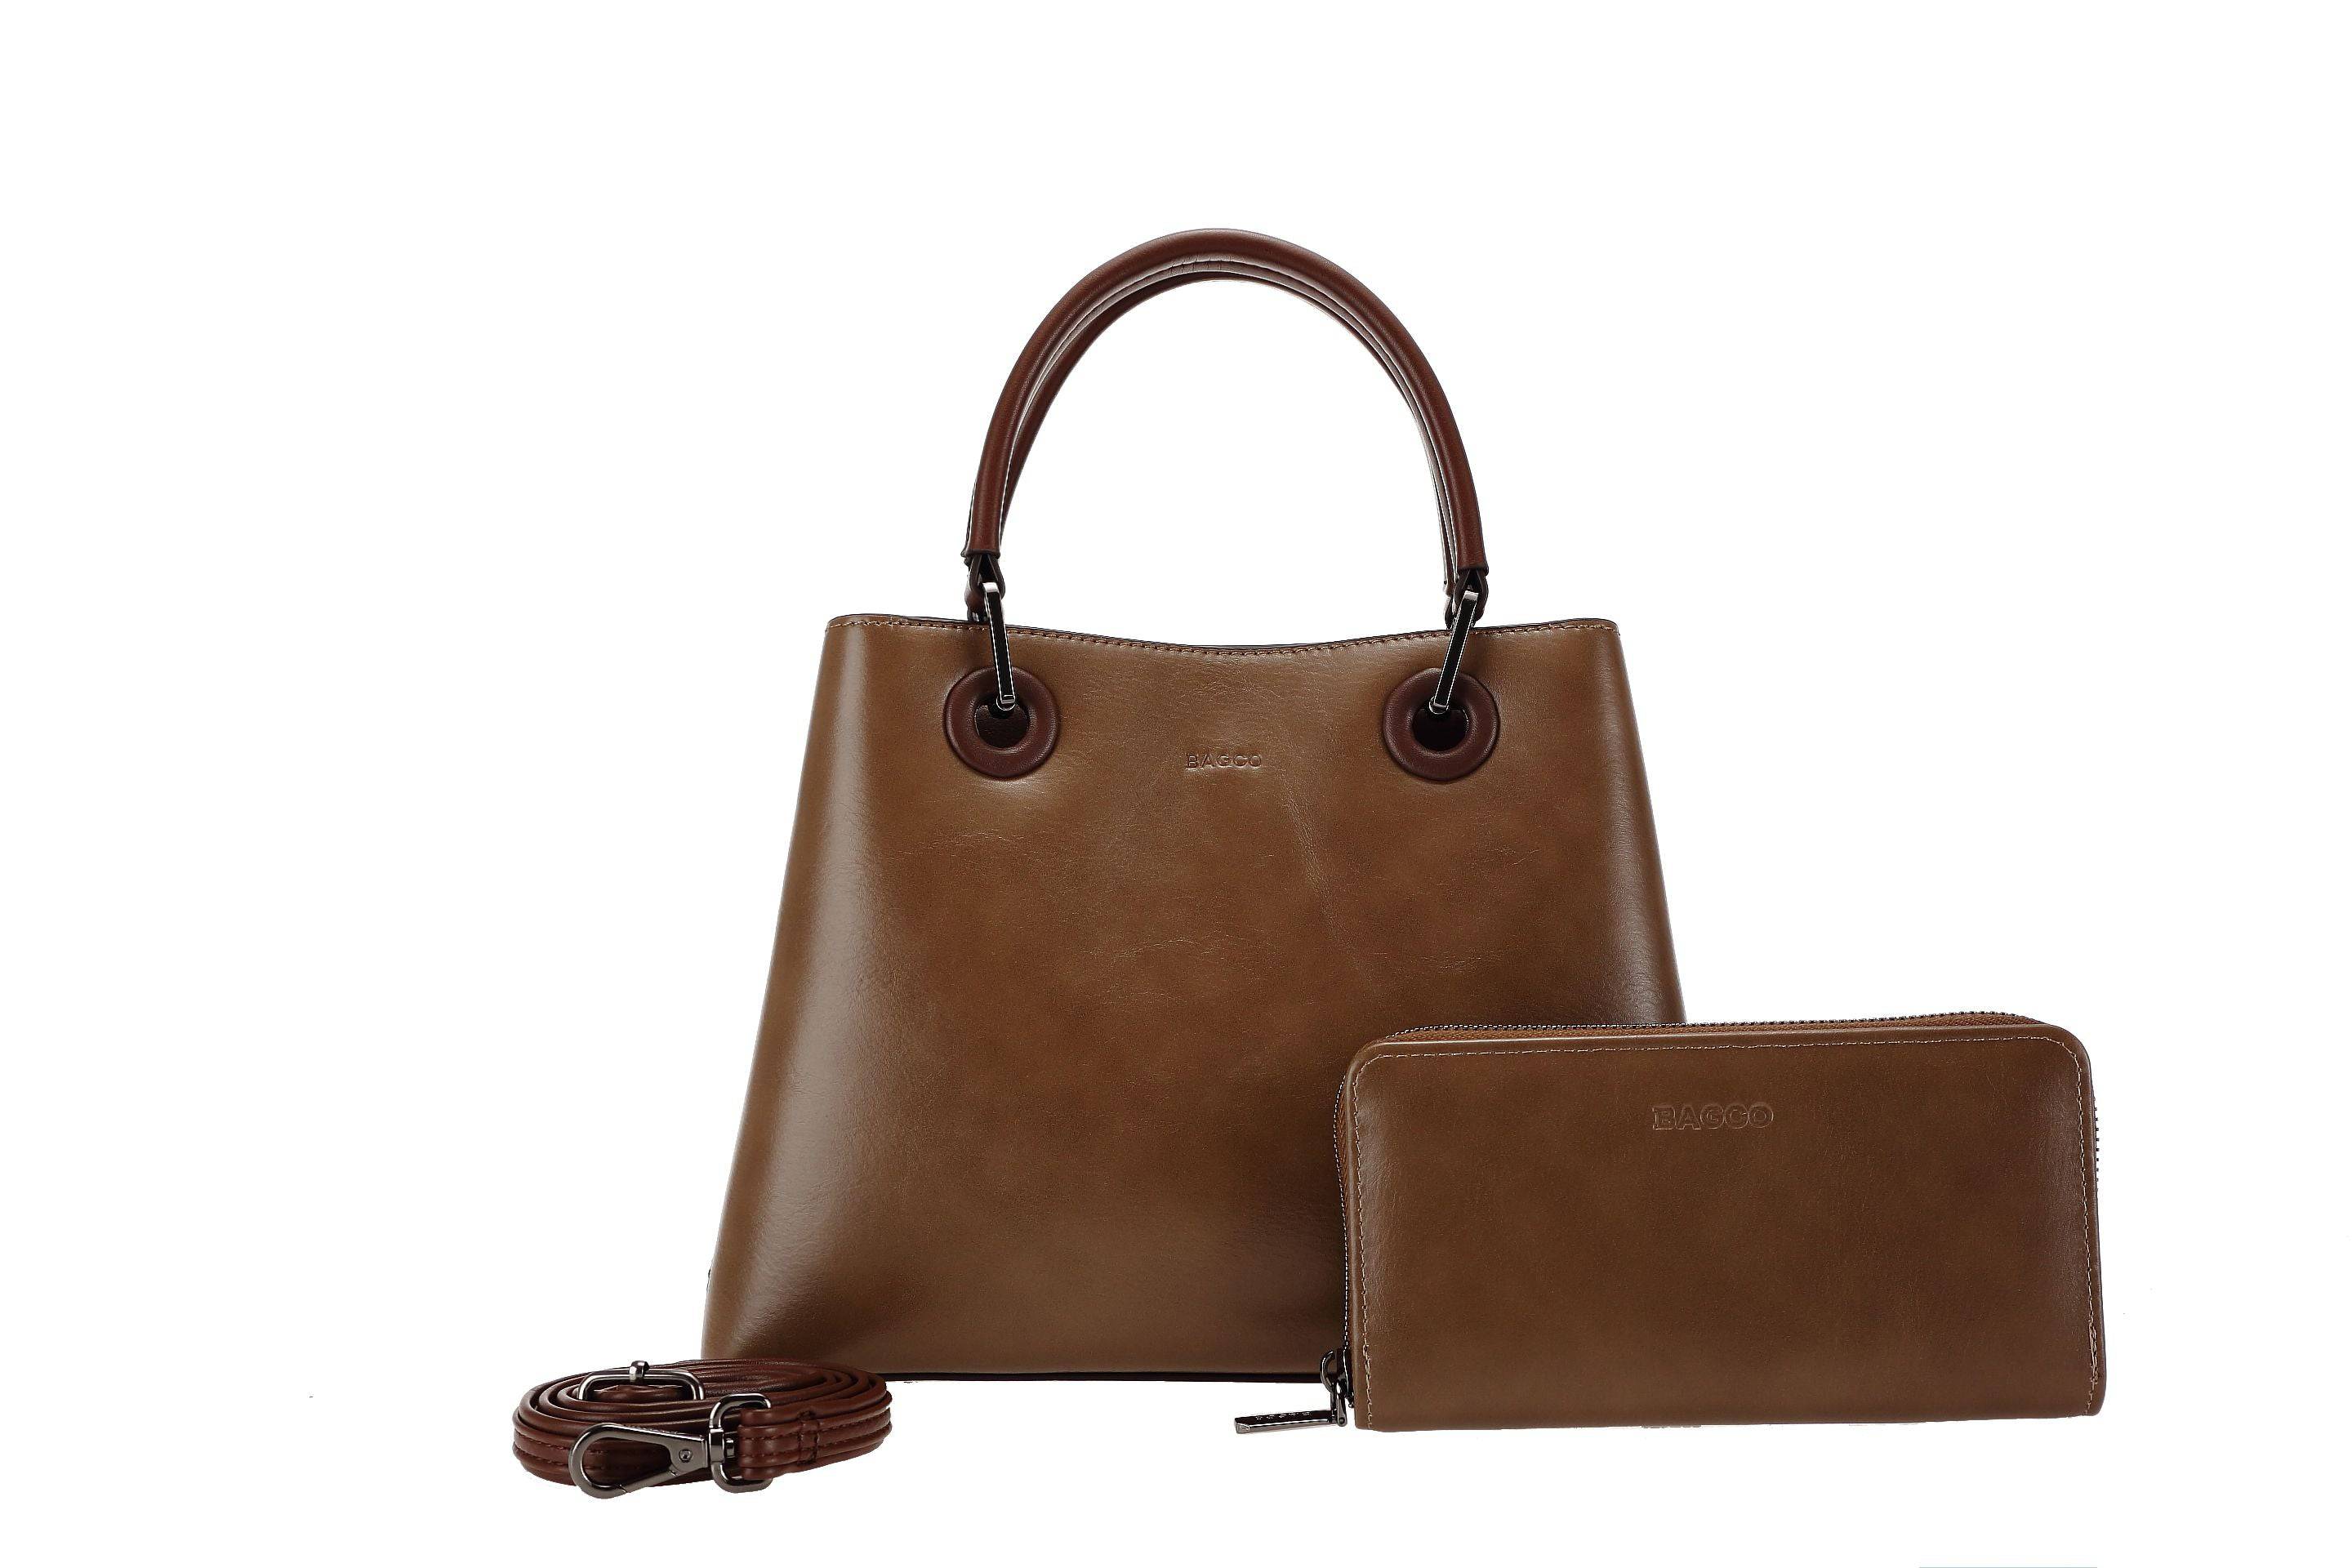 حقيبة يد نسائية باللون البنى مربعة الشكل كبيرة الحجم بيد وحزام طويل لحملها على الكتف - KSA